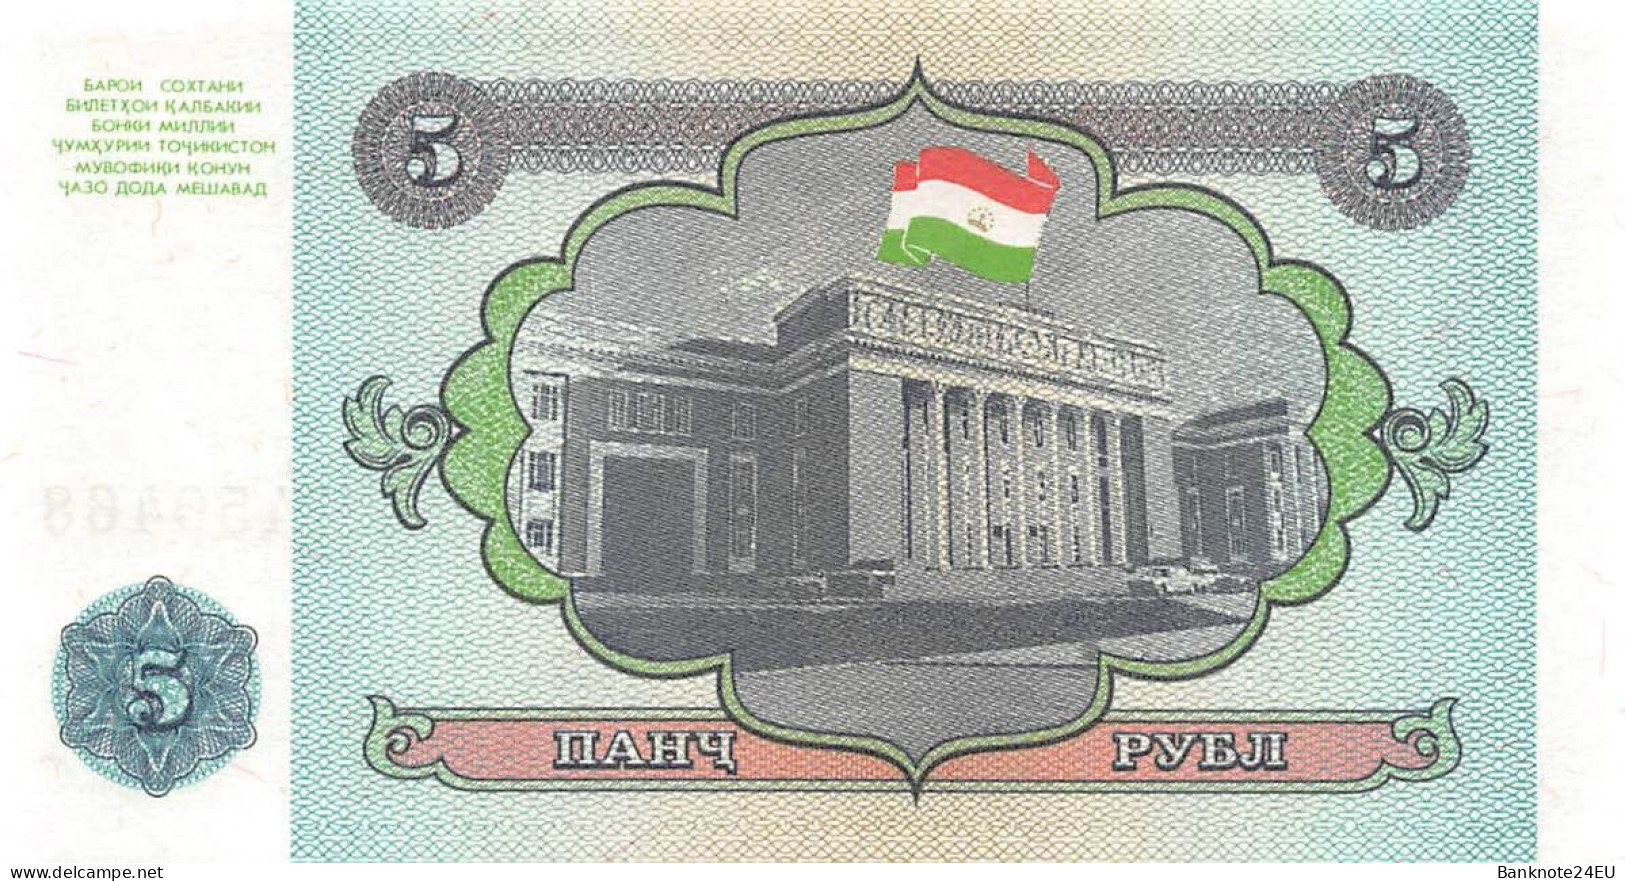 Tajikistan 5 Rubles 1994 Unc Pn 2a, Banknote24 - Tadjikistan